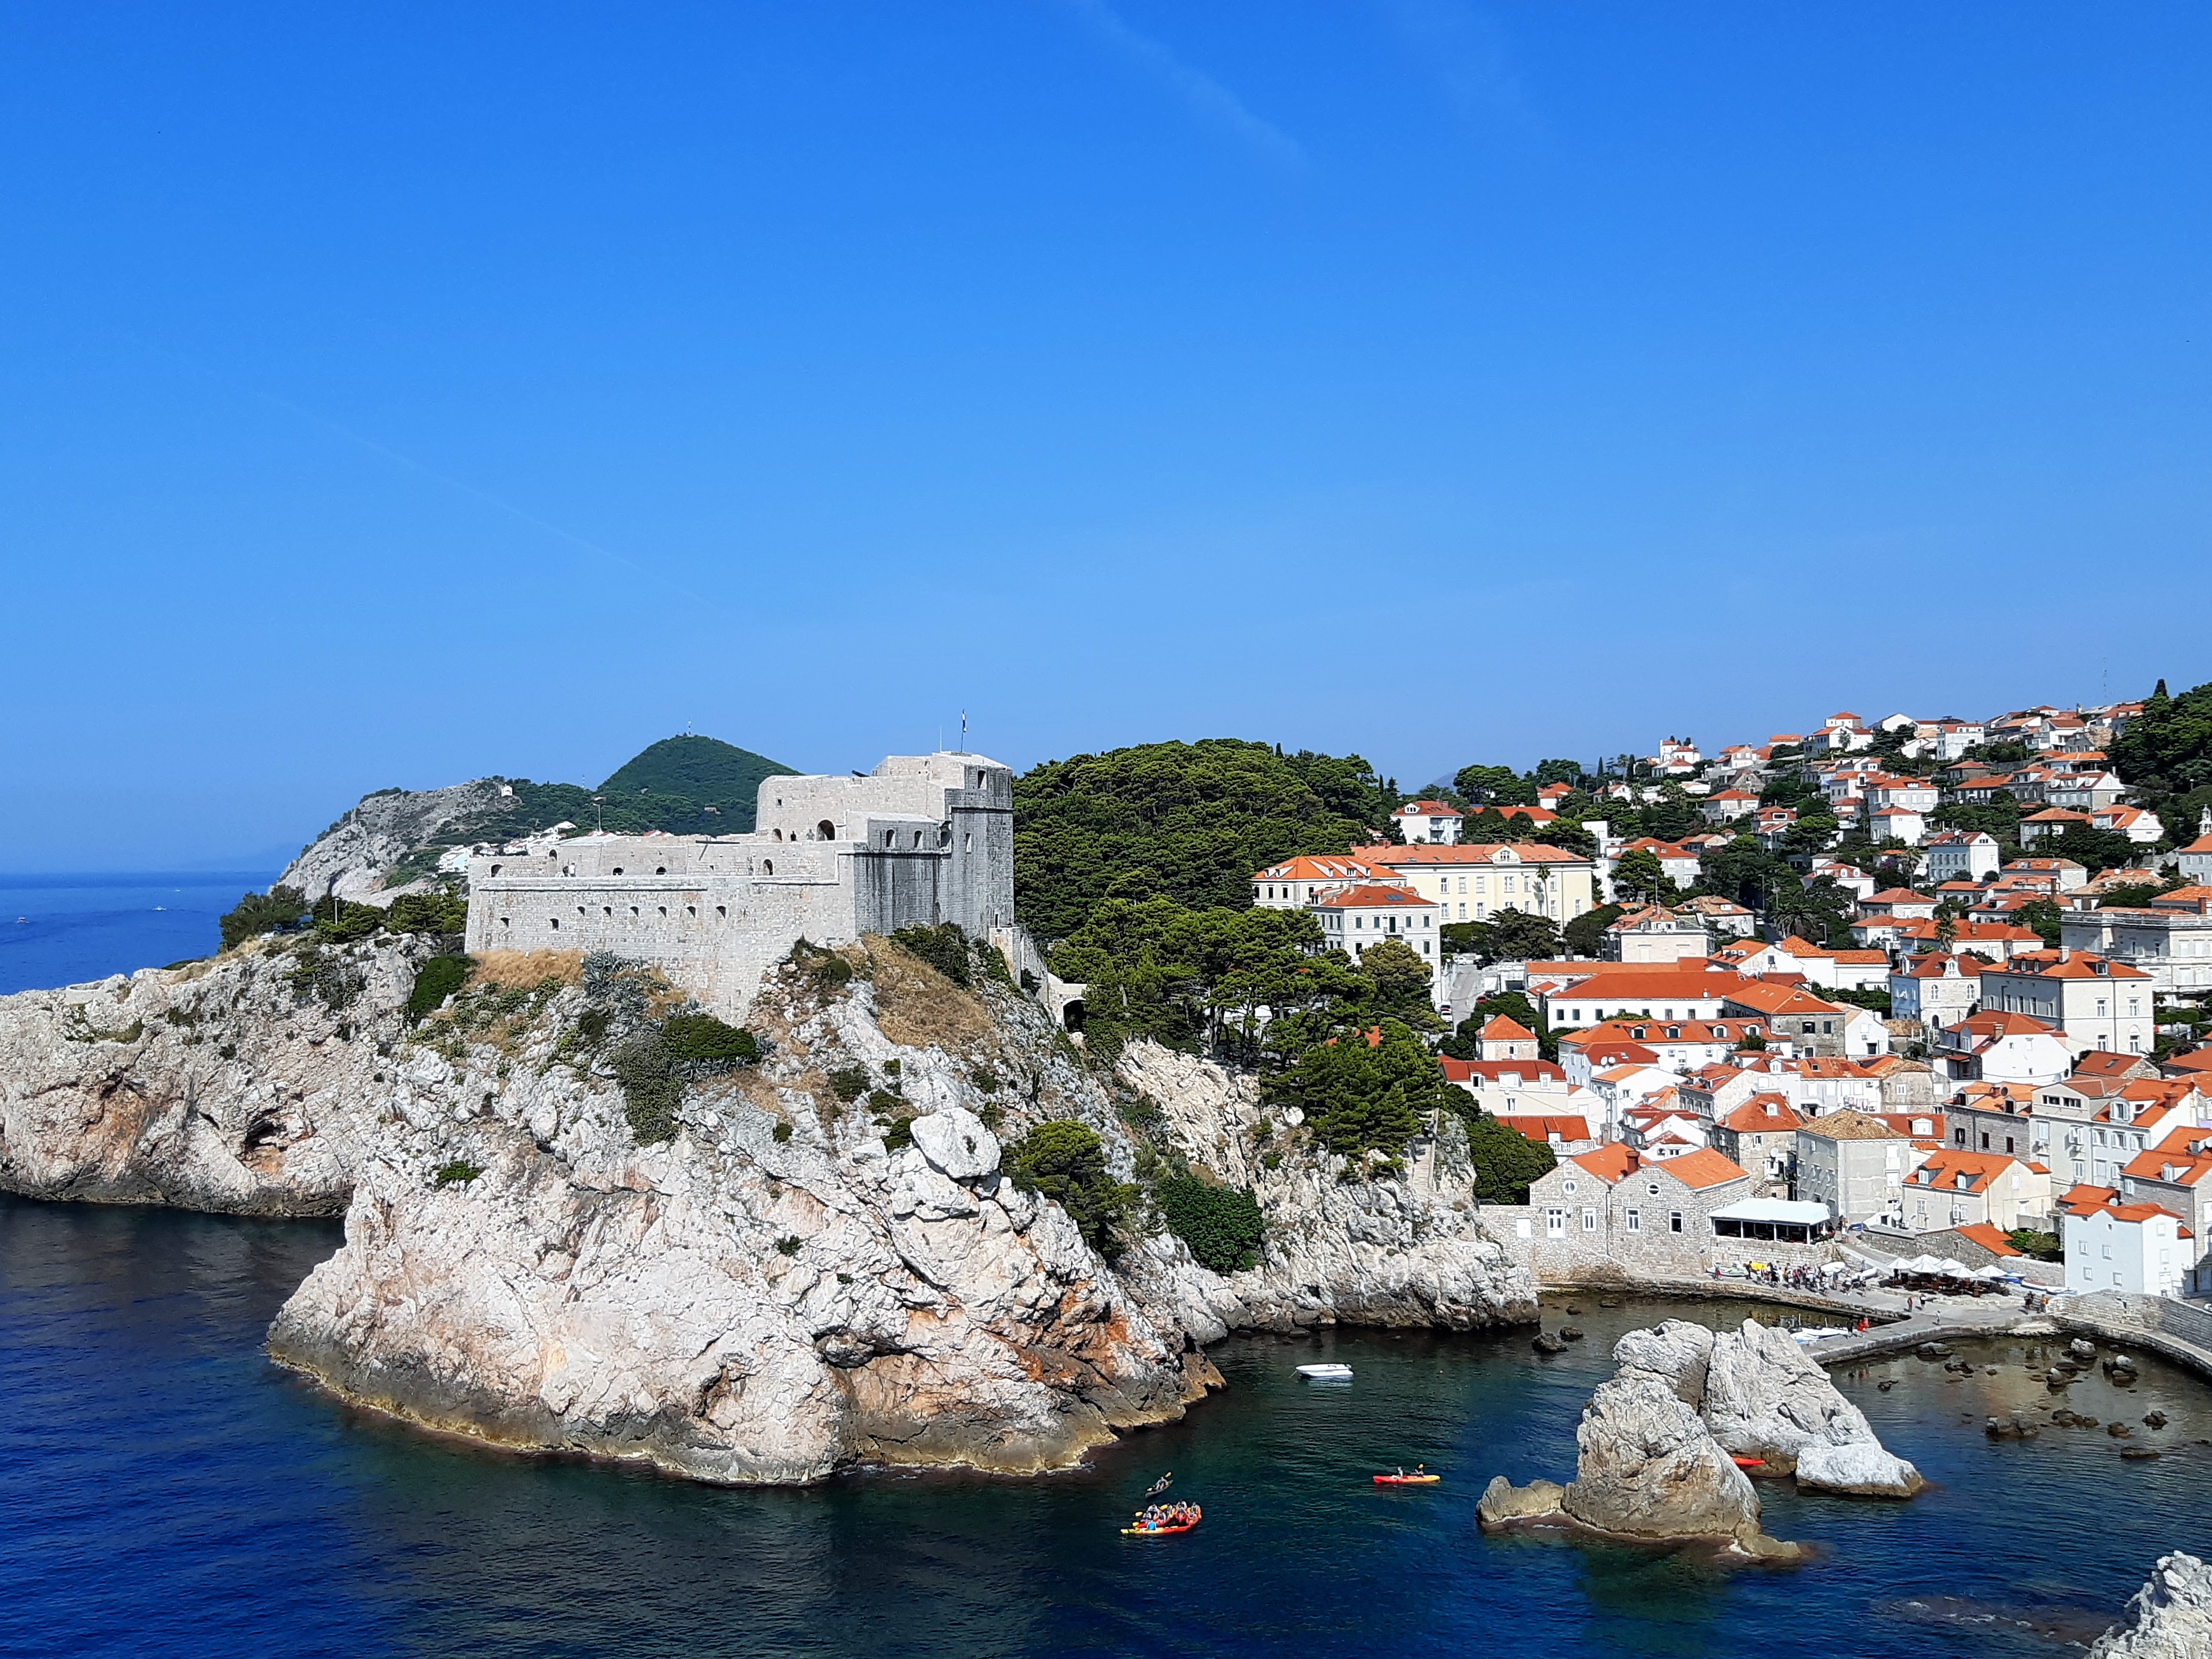 Kreuzfahrt durch die Adria - Dubrovnik mit der Stadtmauer auf eigene Faust entdecken